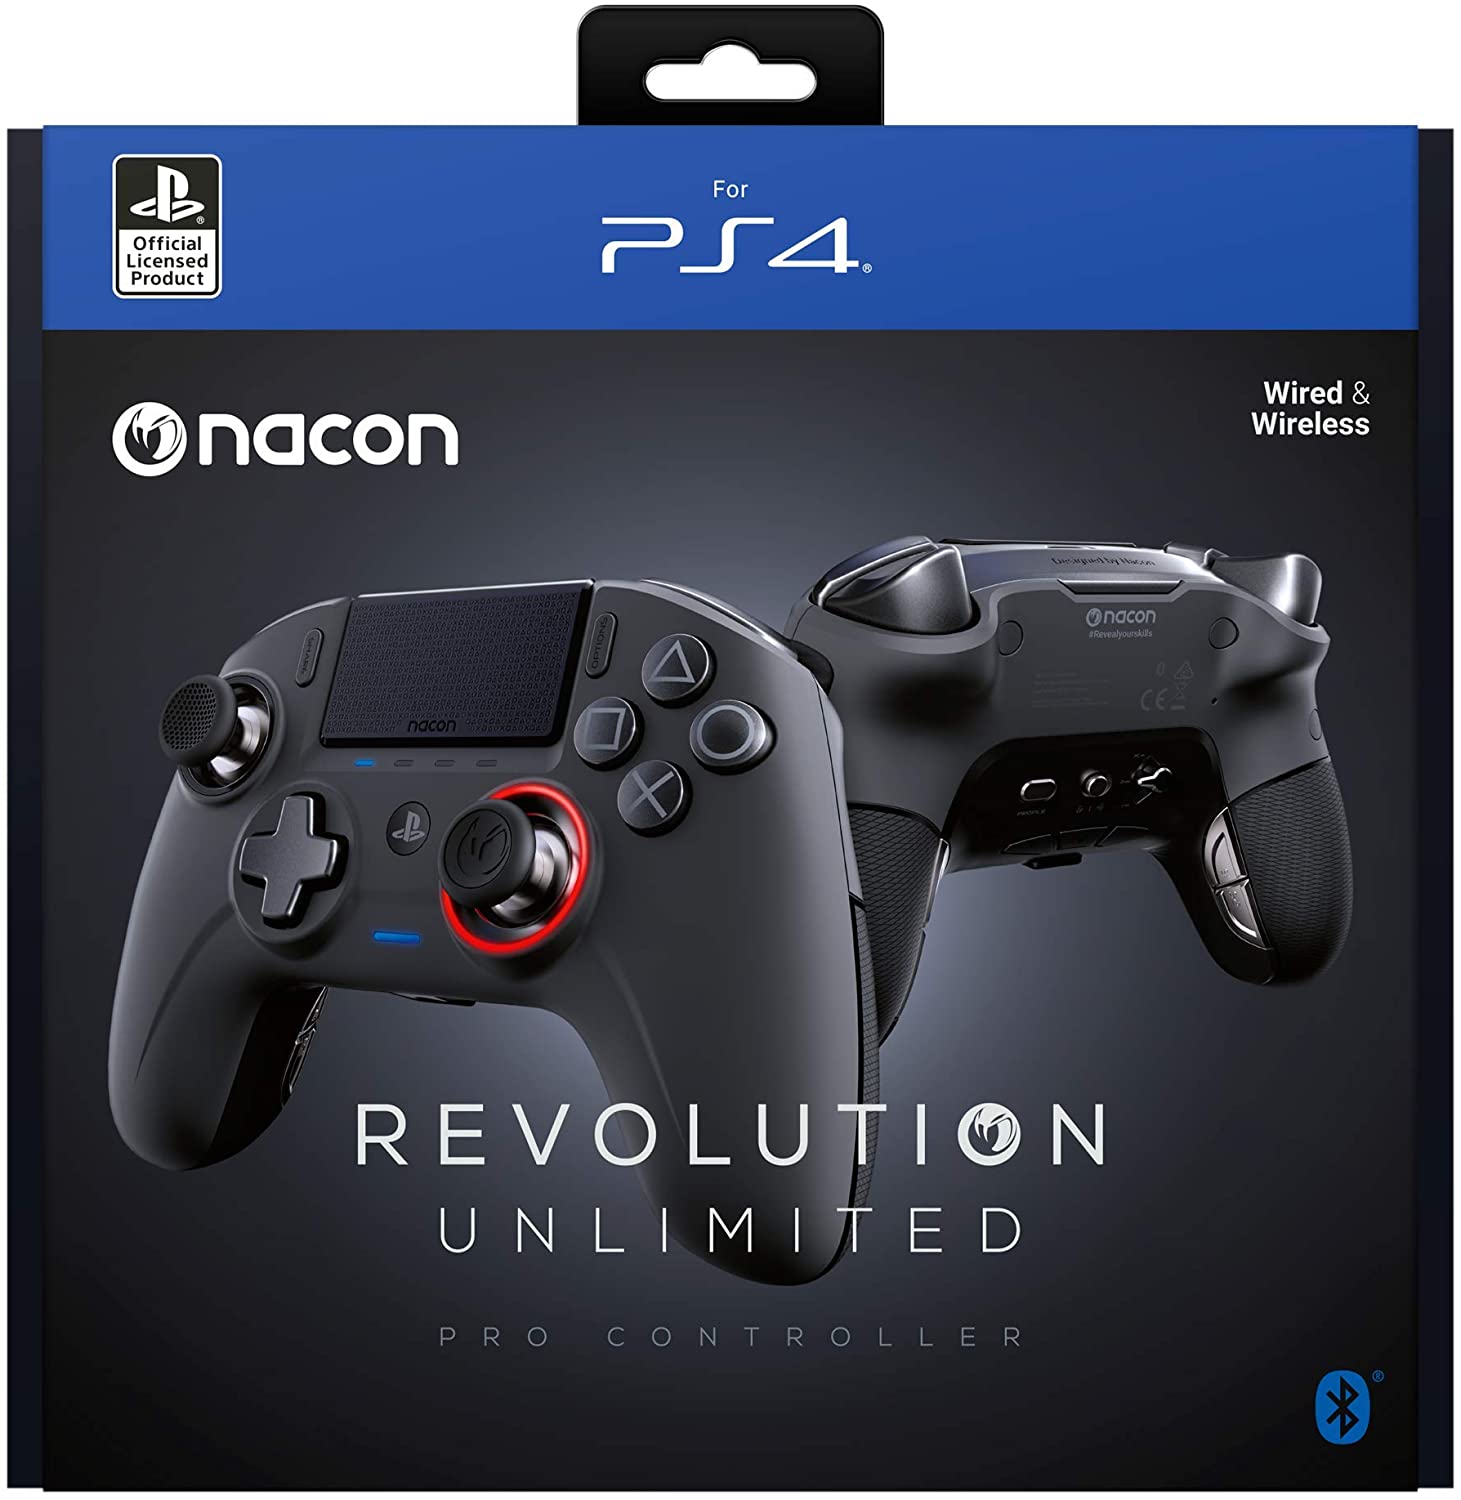 nacon-revolution-unlimited-pro-controller-boite